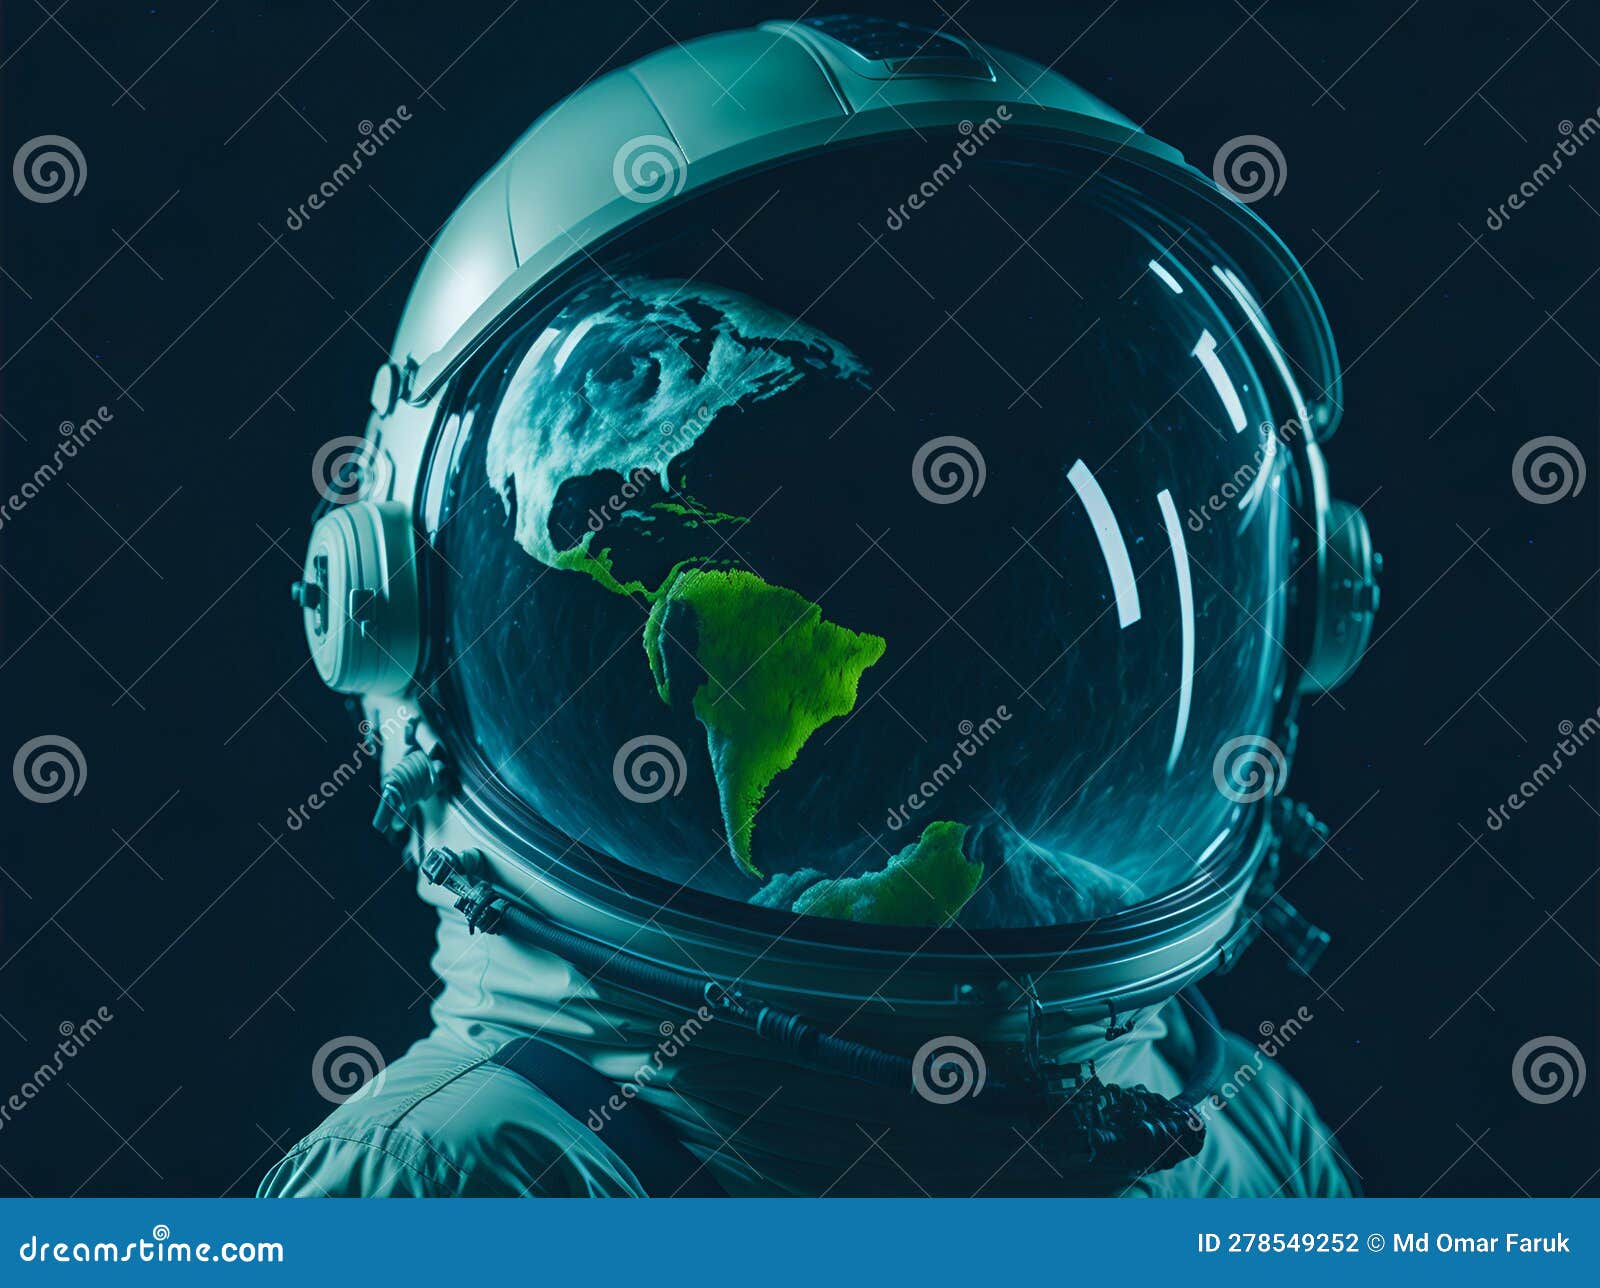 an astronautâs helmet mirror of the earth.